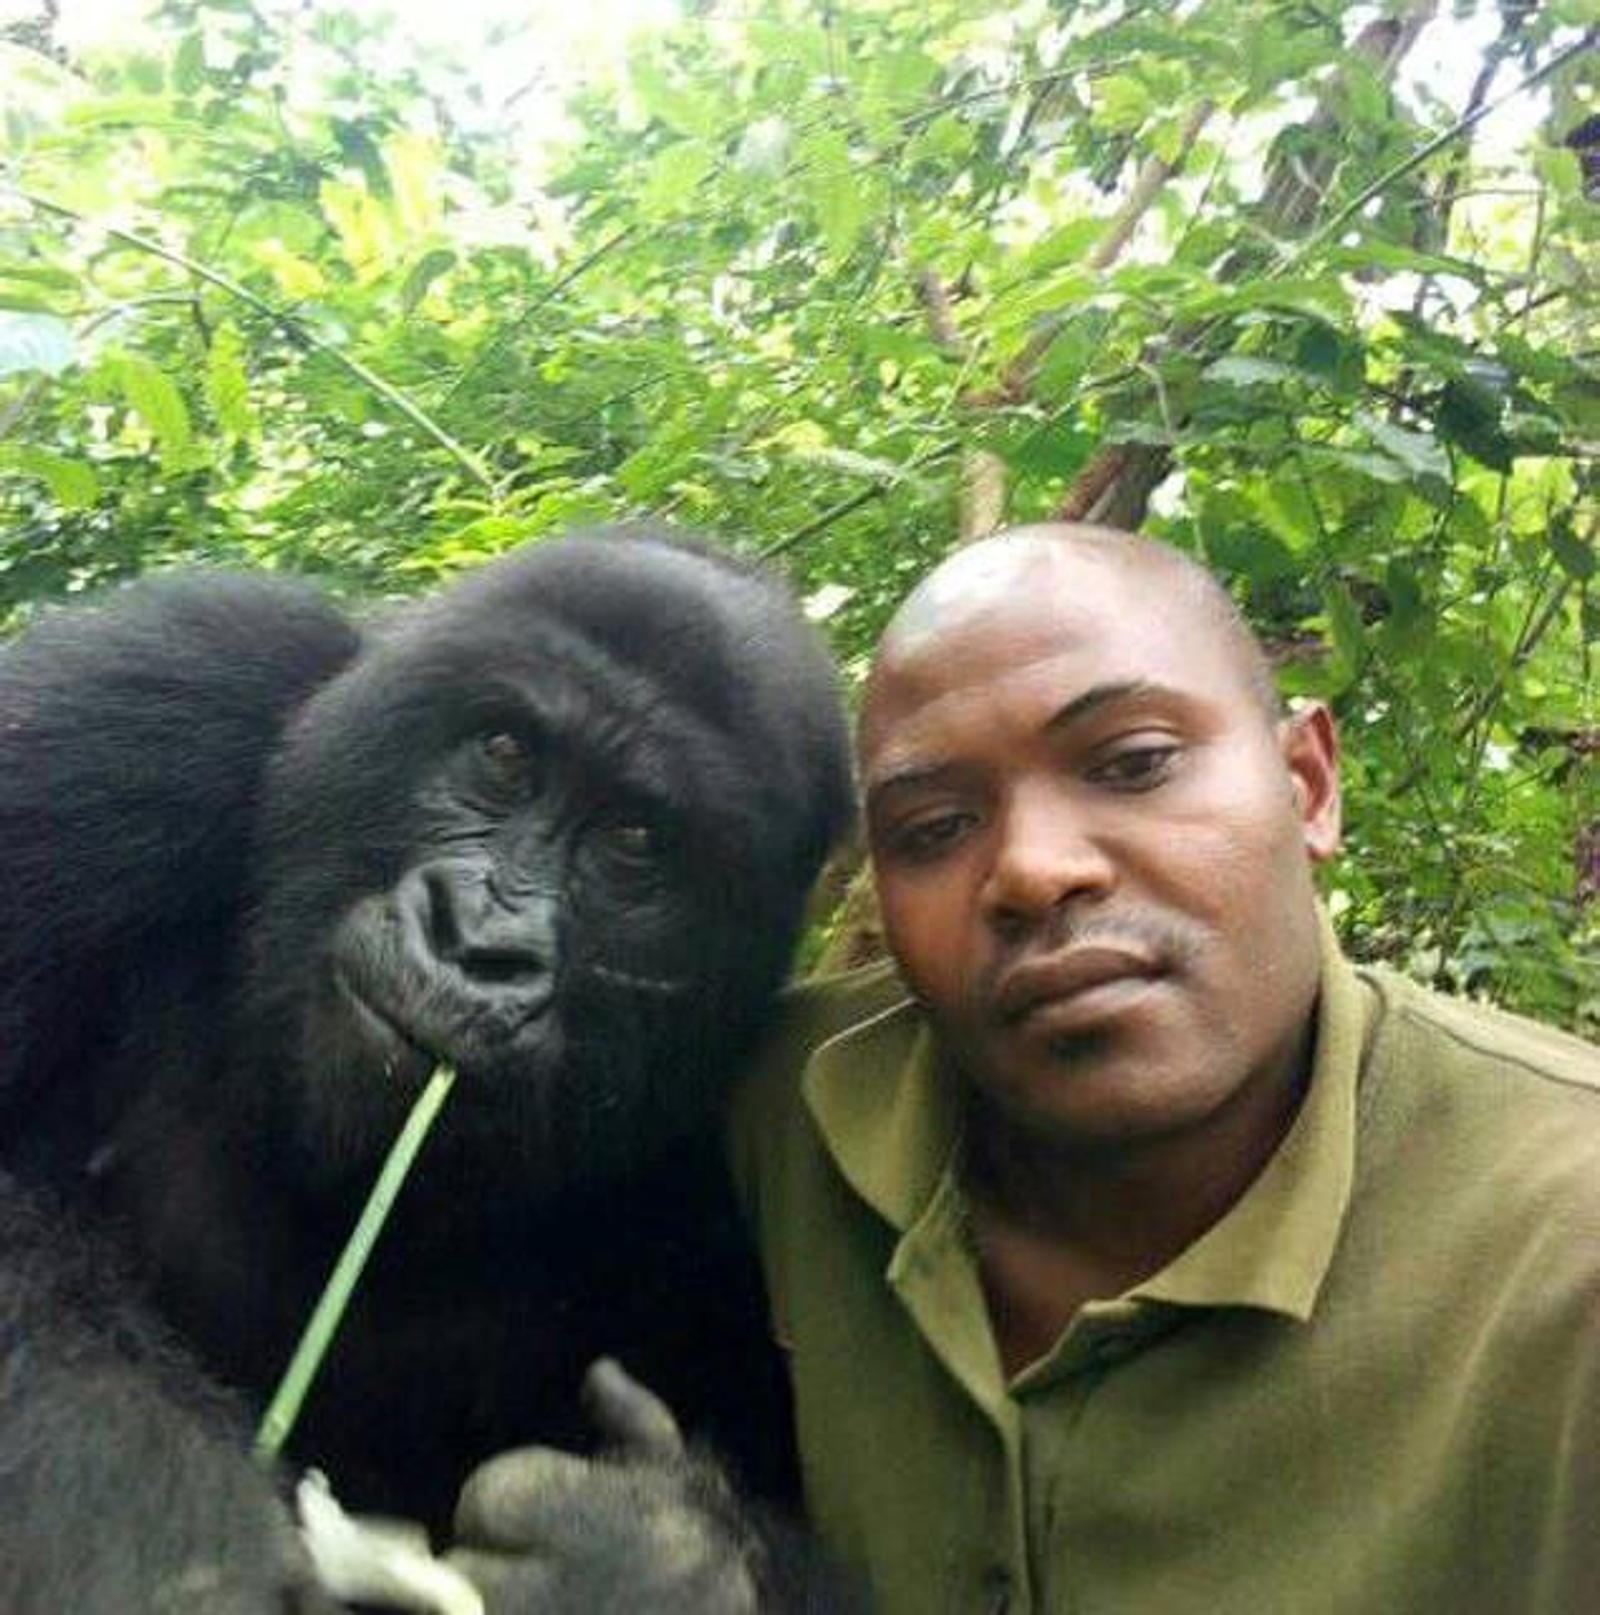 Il selfie del ranger con i gorilla fa il giro del mondo